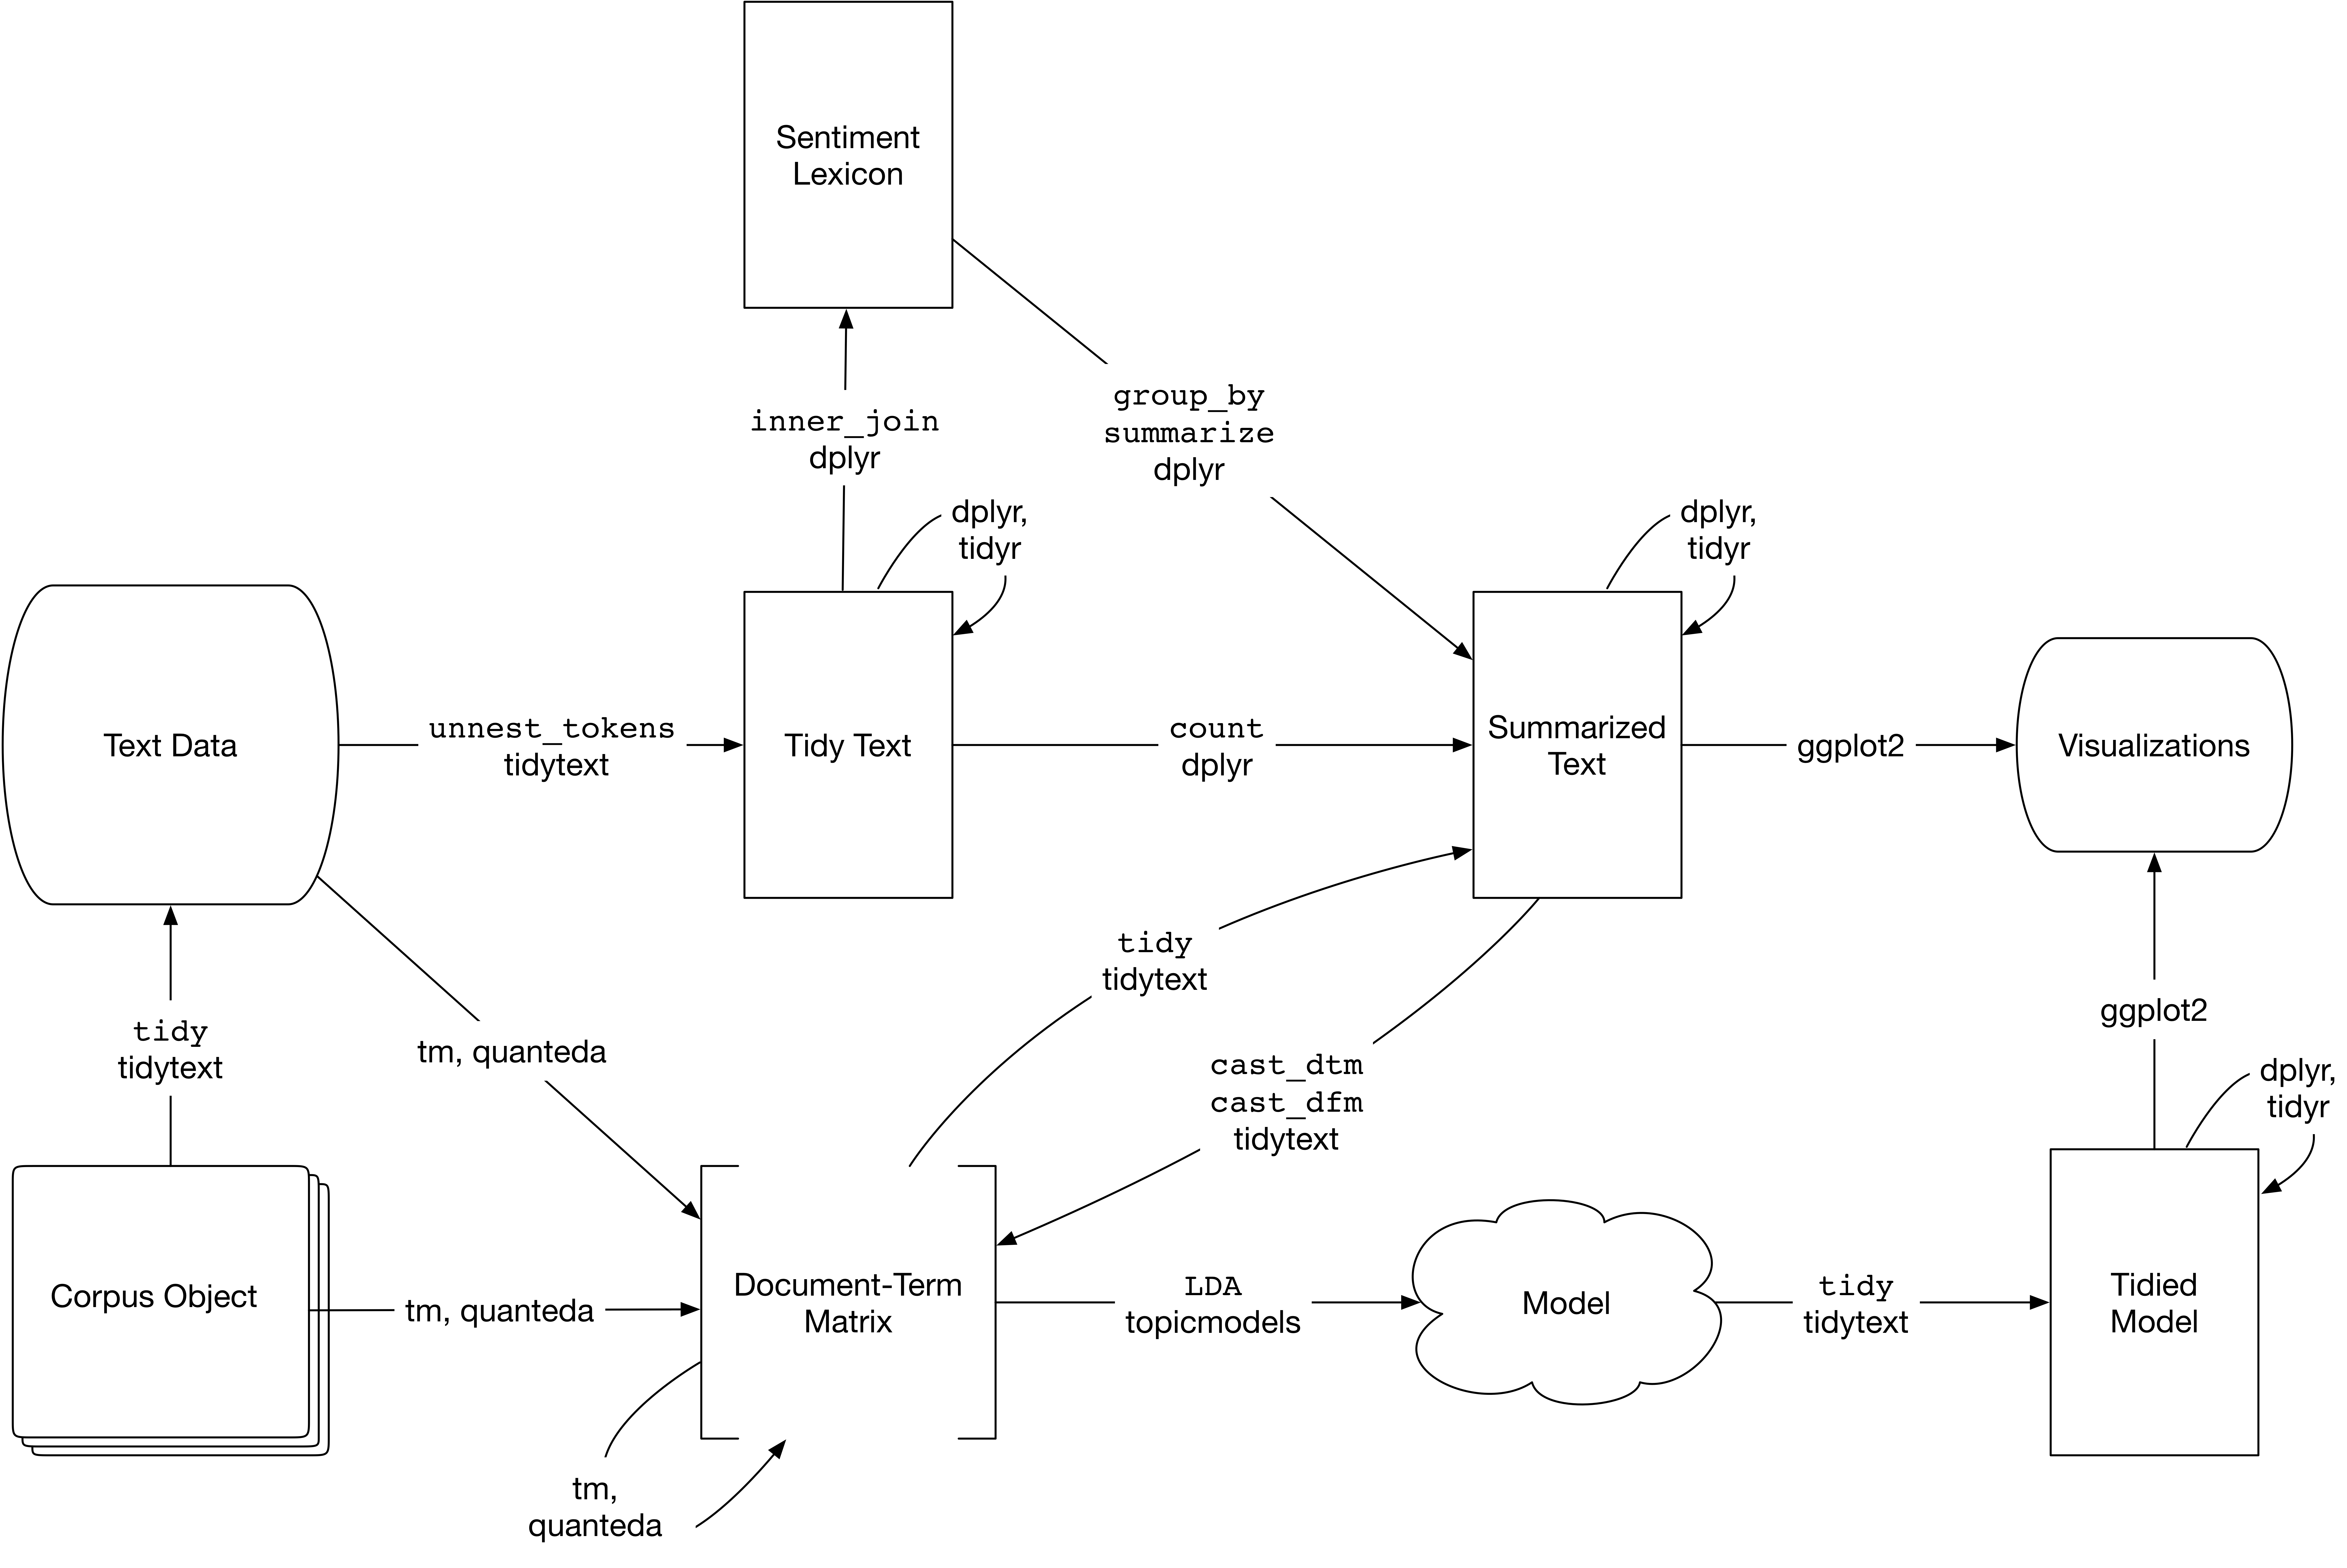 应用主题模型进行文本分析的流程图。